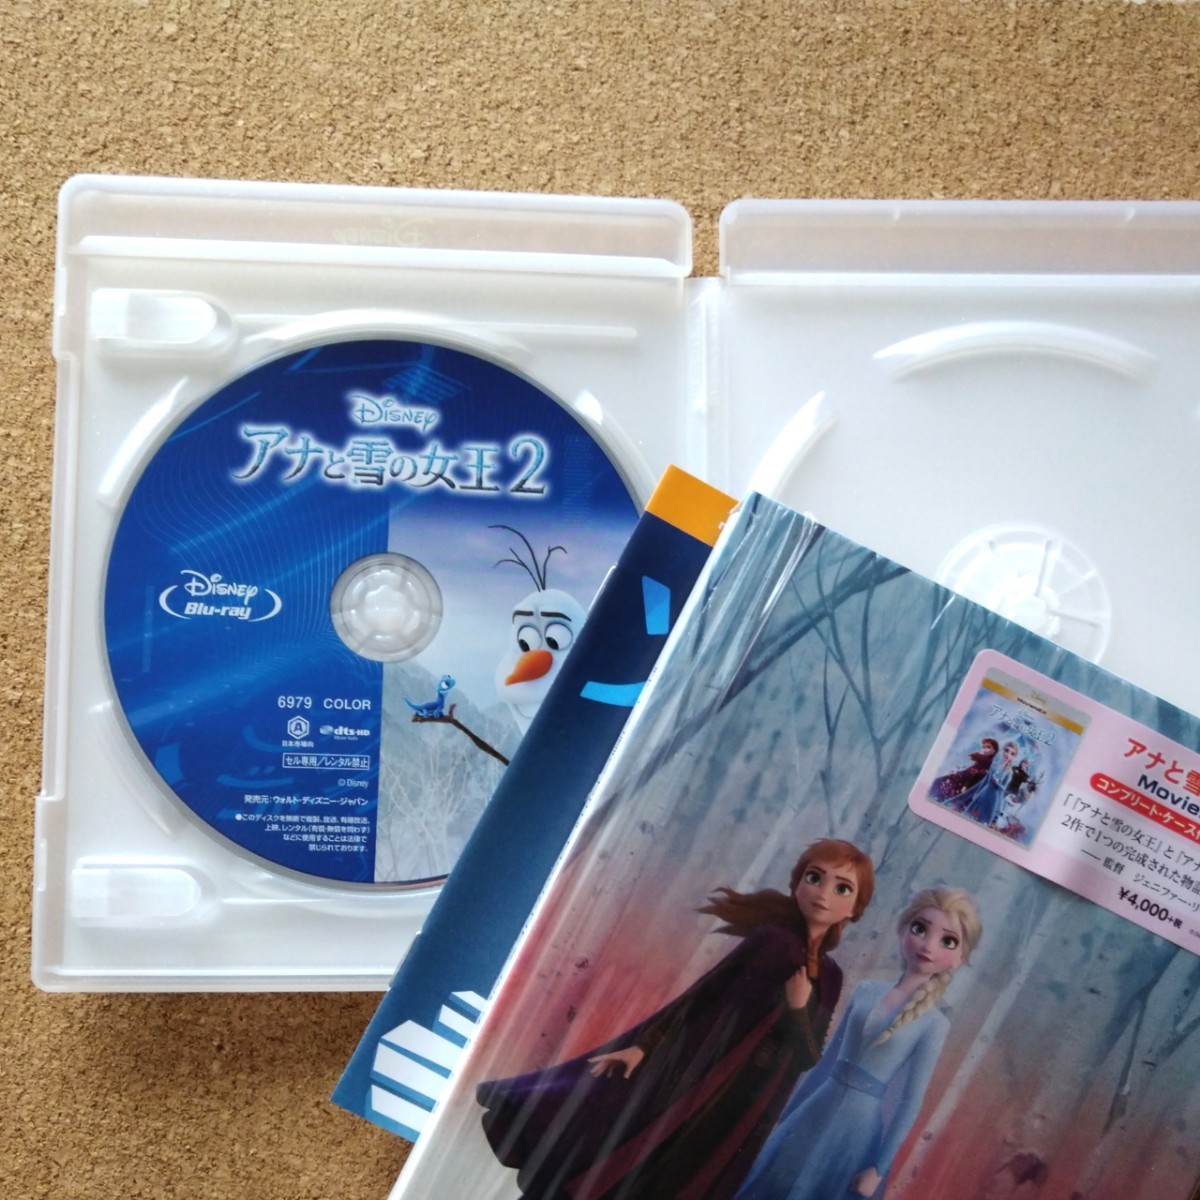 アナと雪の女王2 MovieNEX Blu-ray